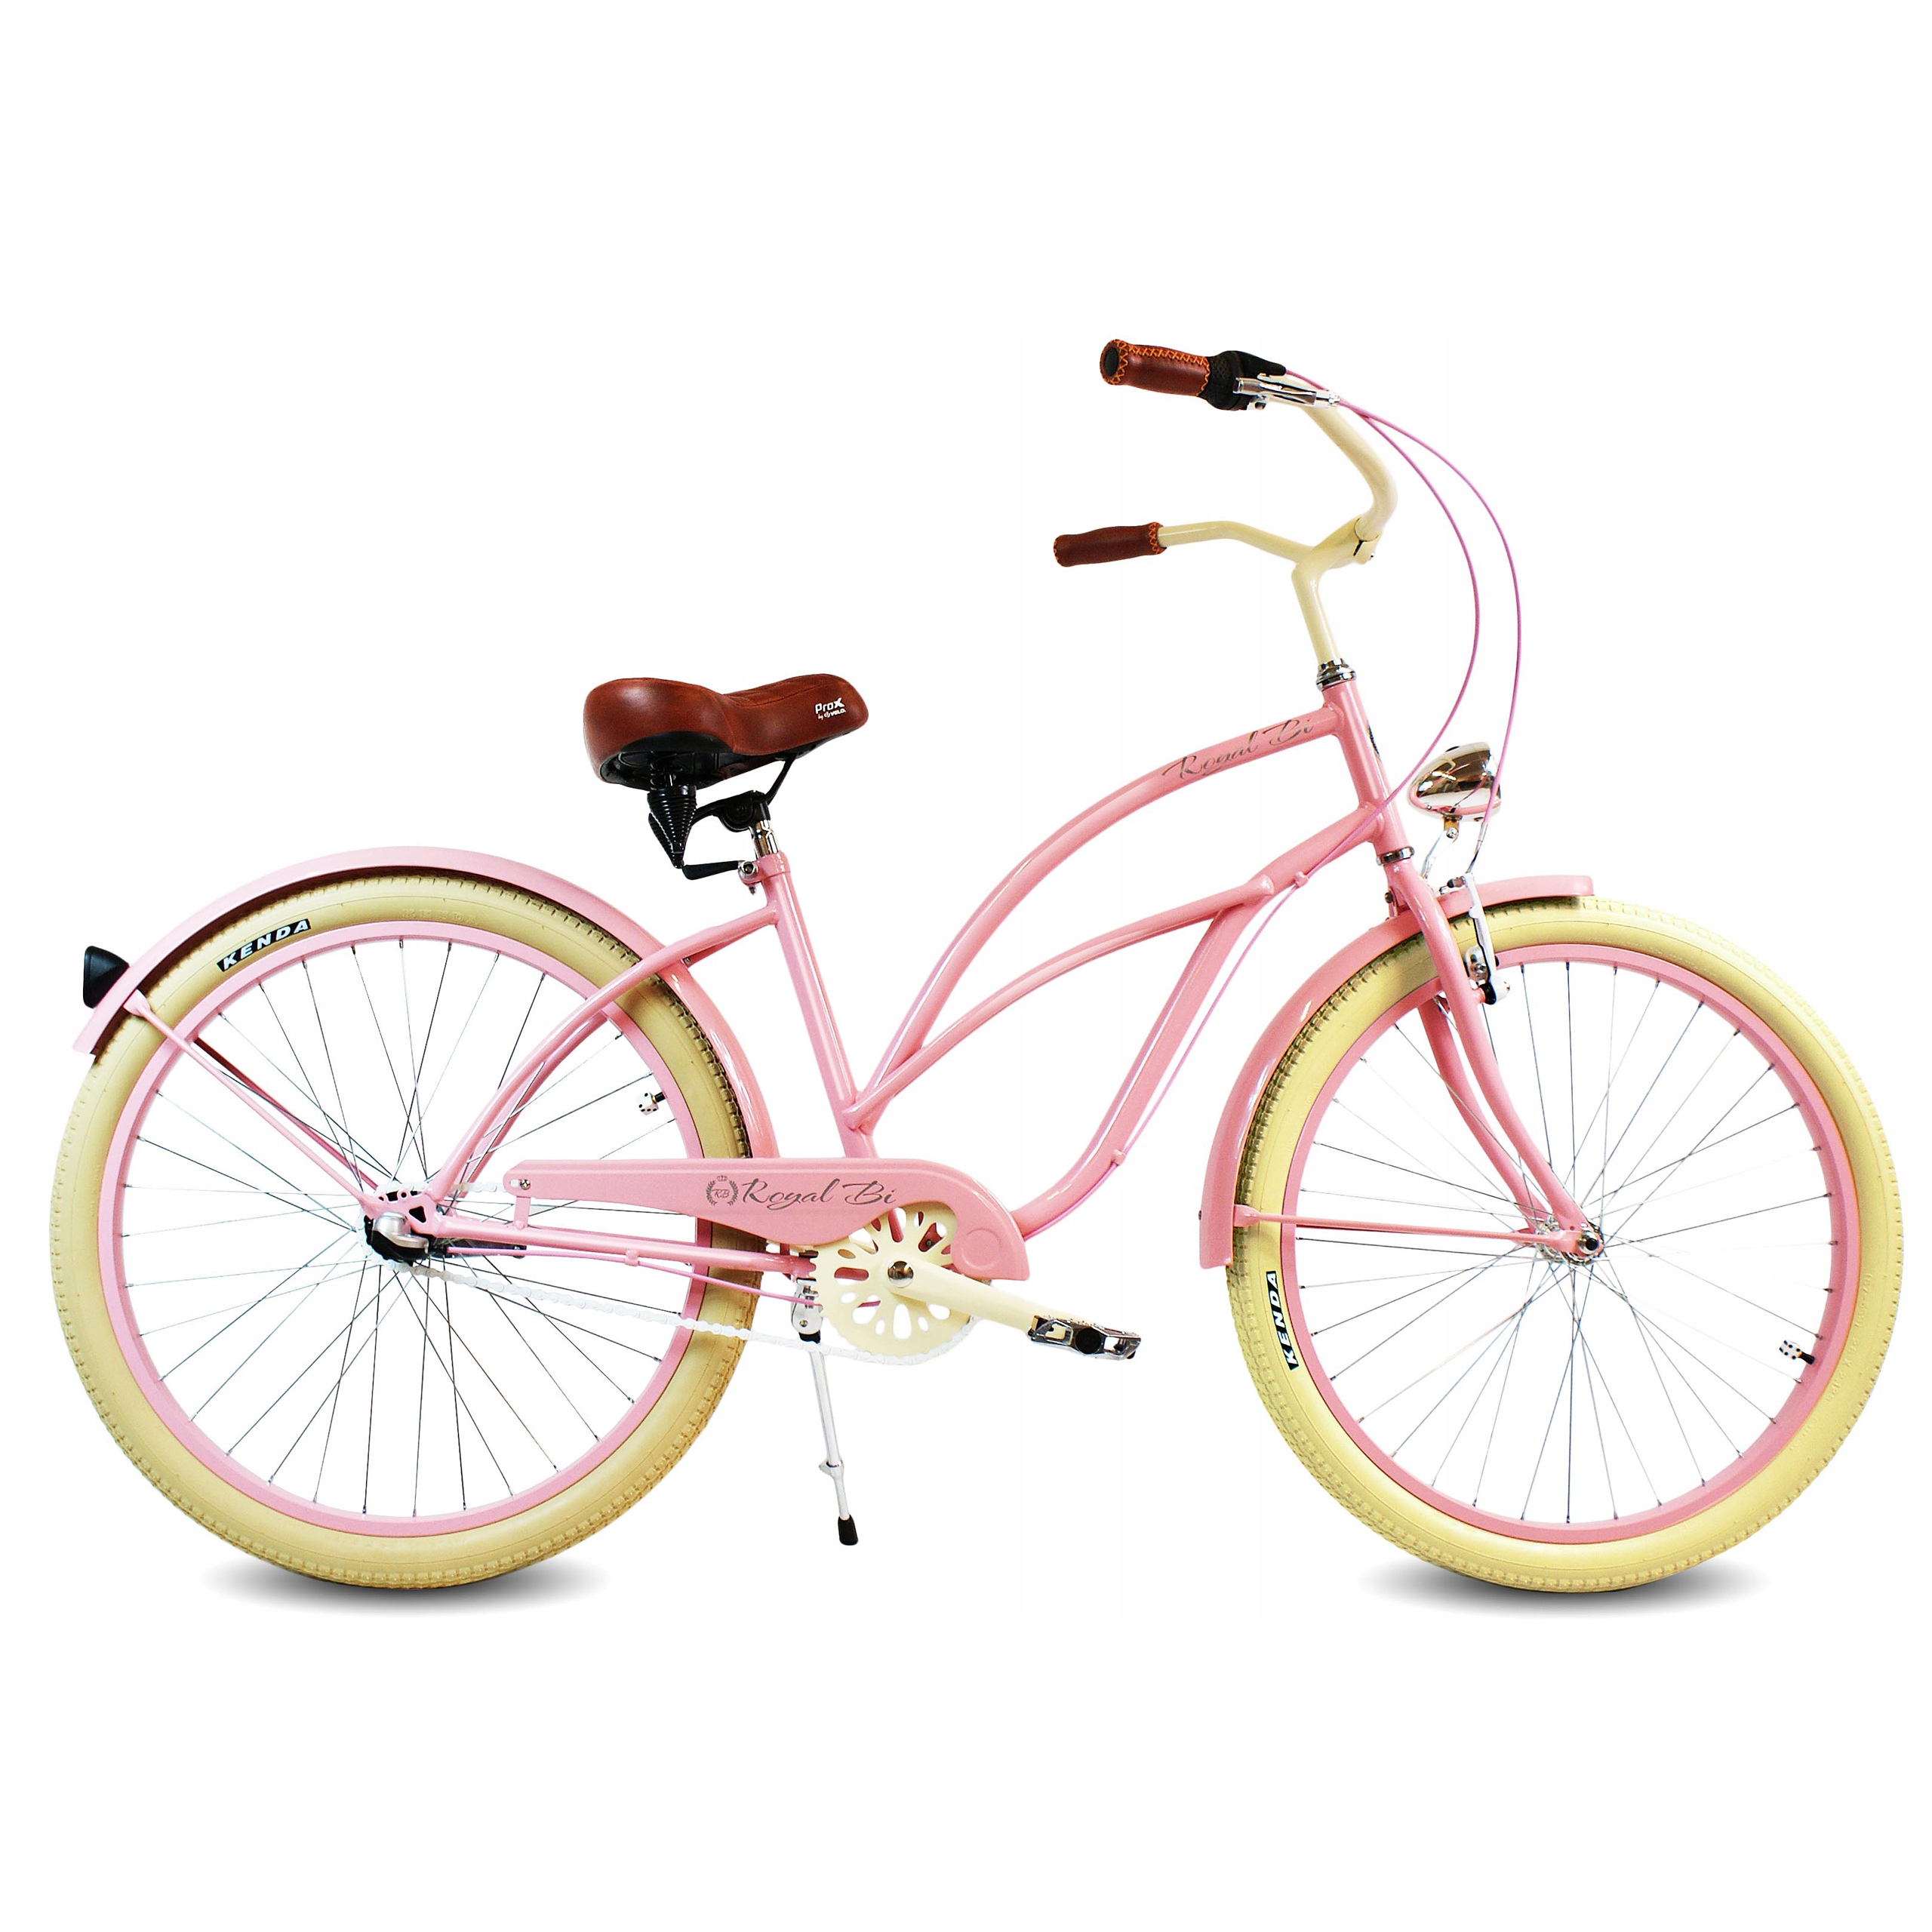 Велосипед женский stels розовый круизер. Стелс велосипед круизер розовый. Велосипед стелс женский круизер. Прогулочный велосипед стелс. Куплю велосипед женский б